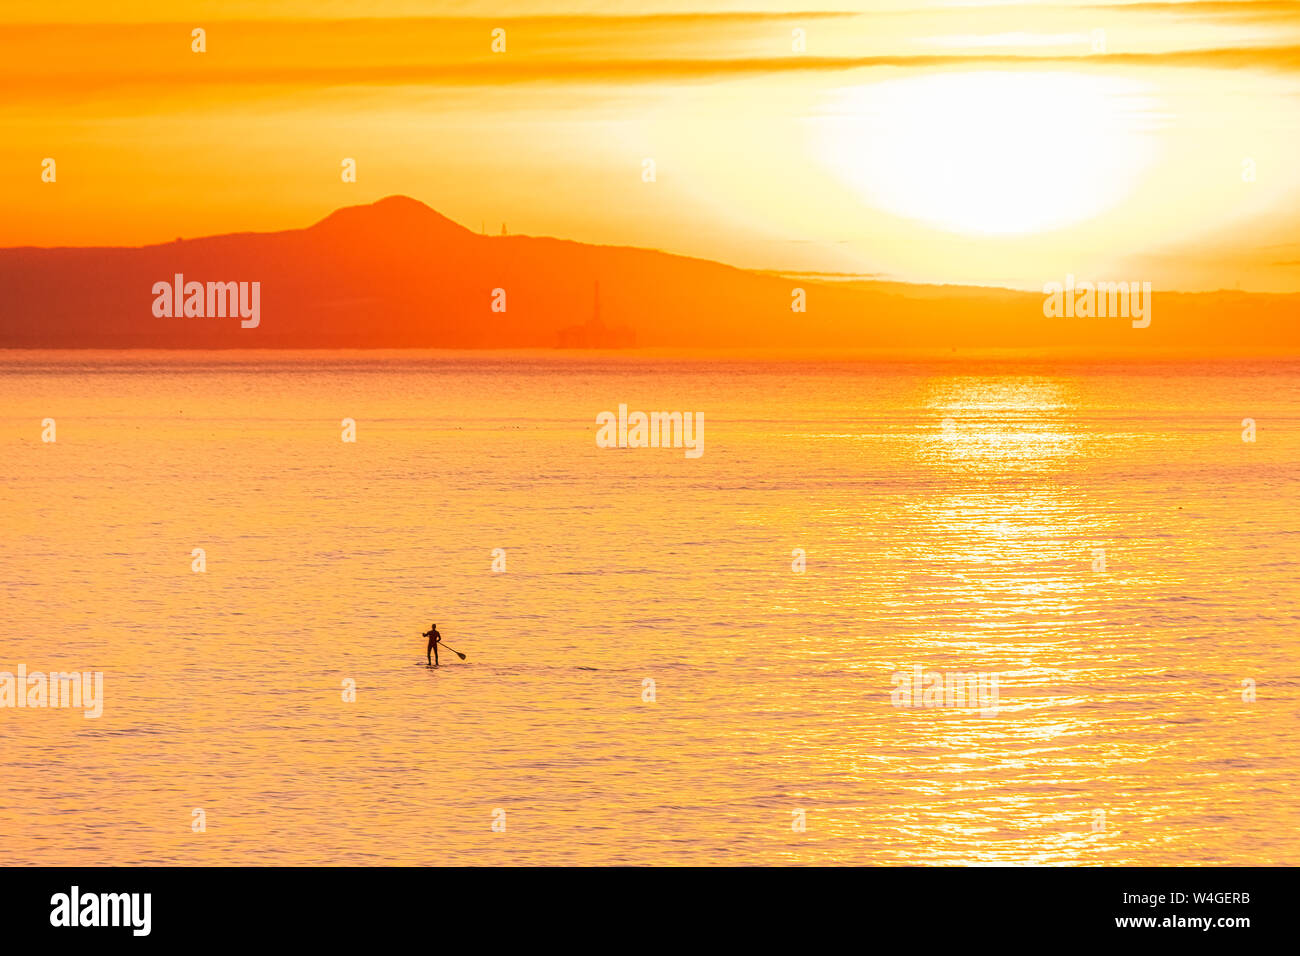 L'homme sur le stand up paddle board au coucher du soleil, North Berwick, East Lothian, Scotland Banque D'Images